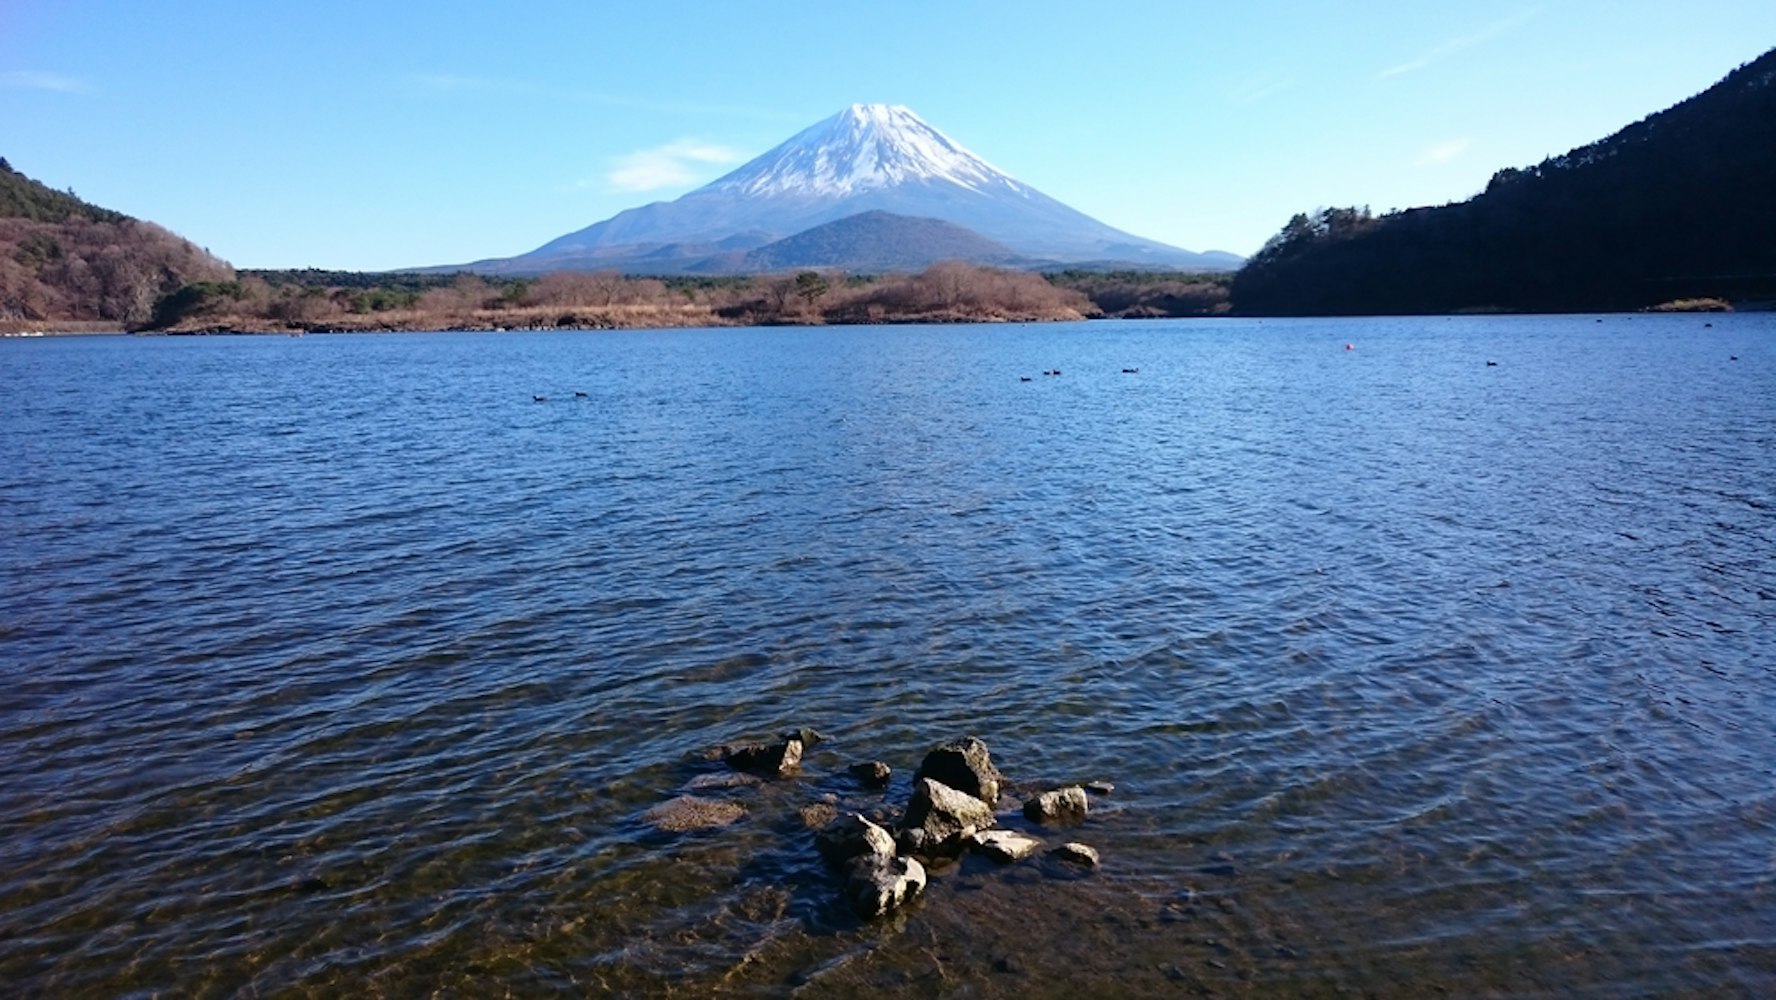 Explore the Fuji Five Lakes